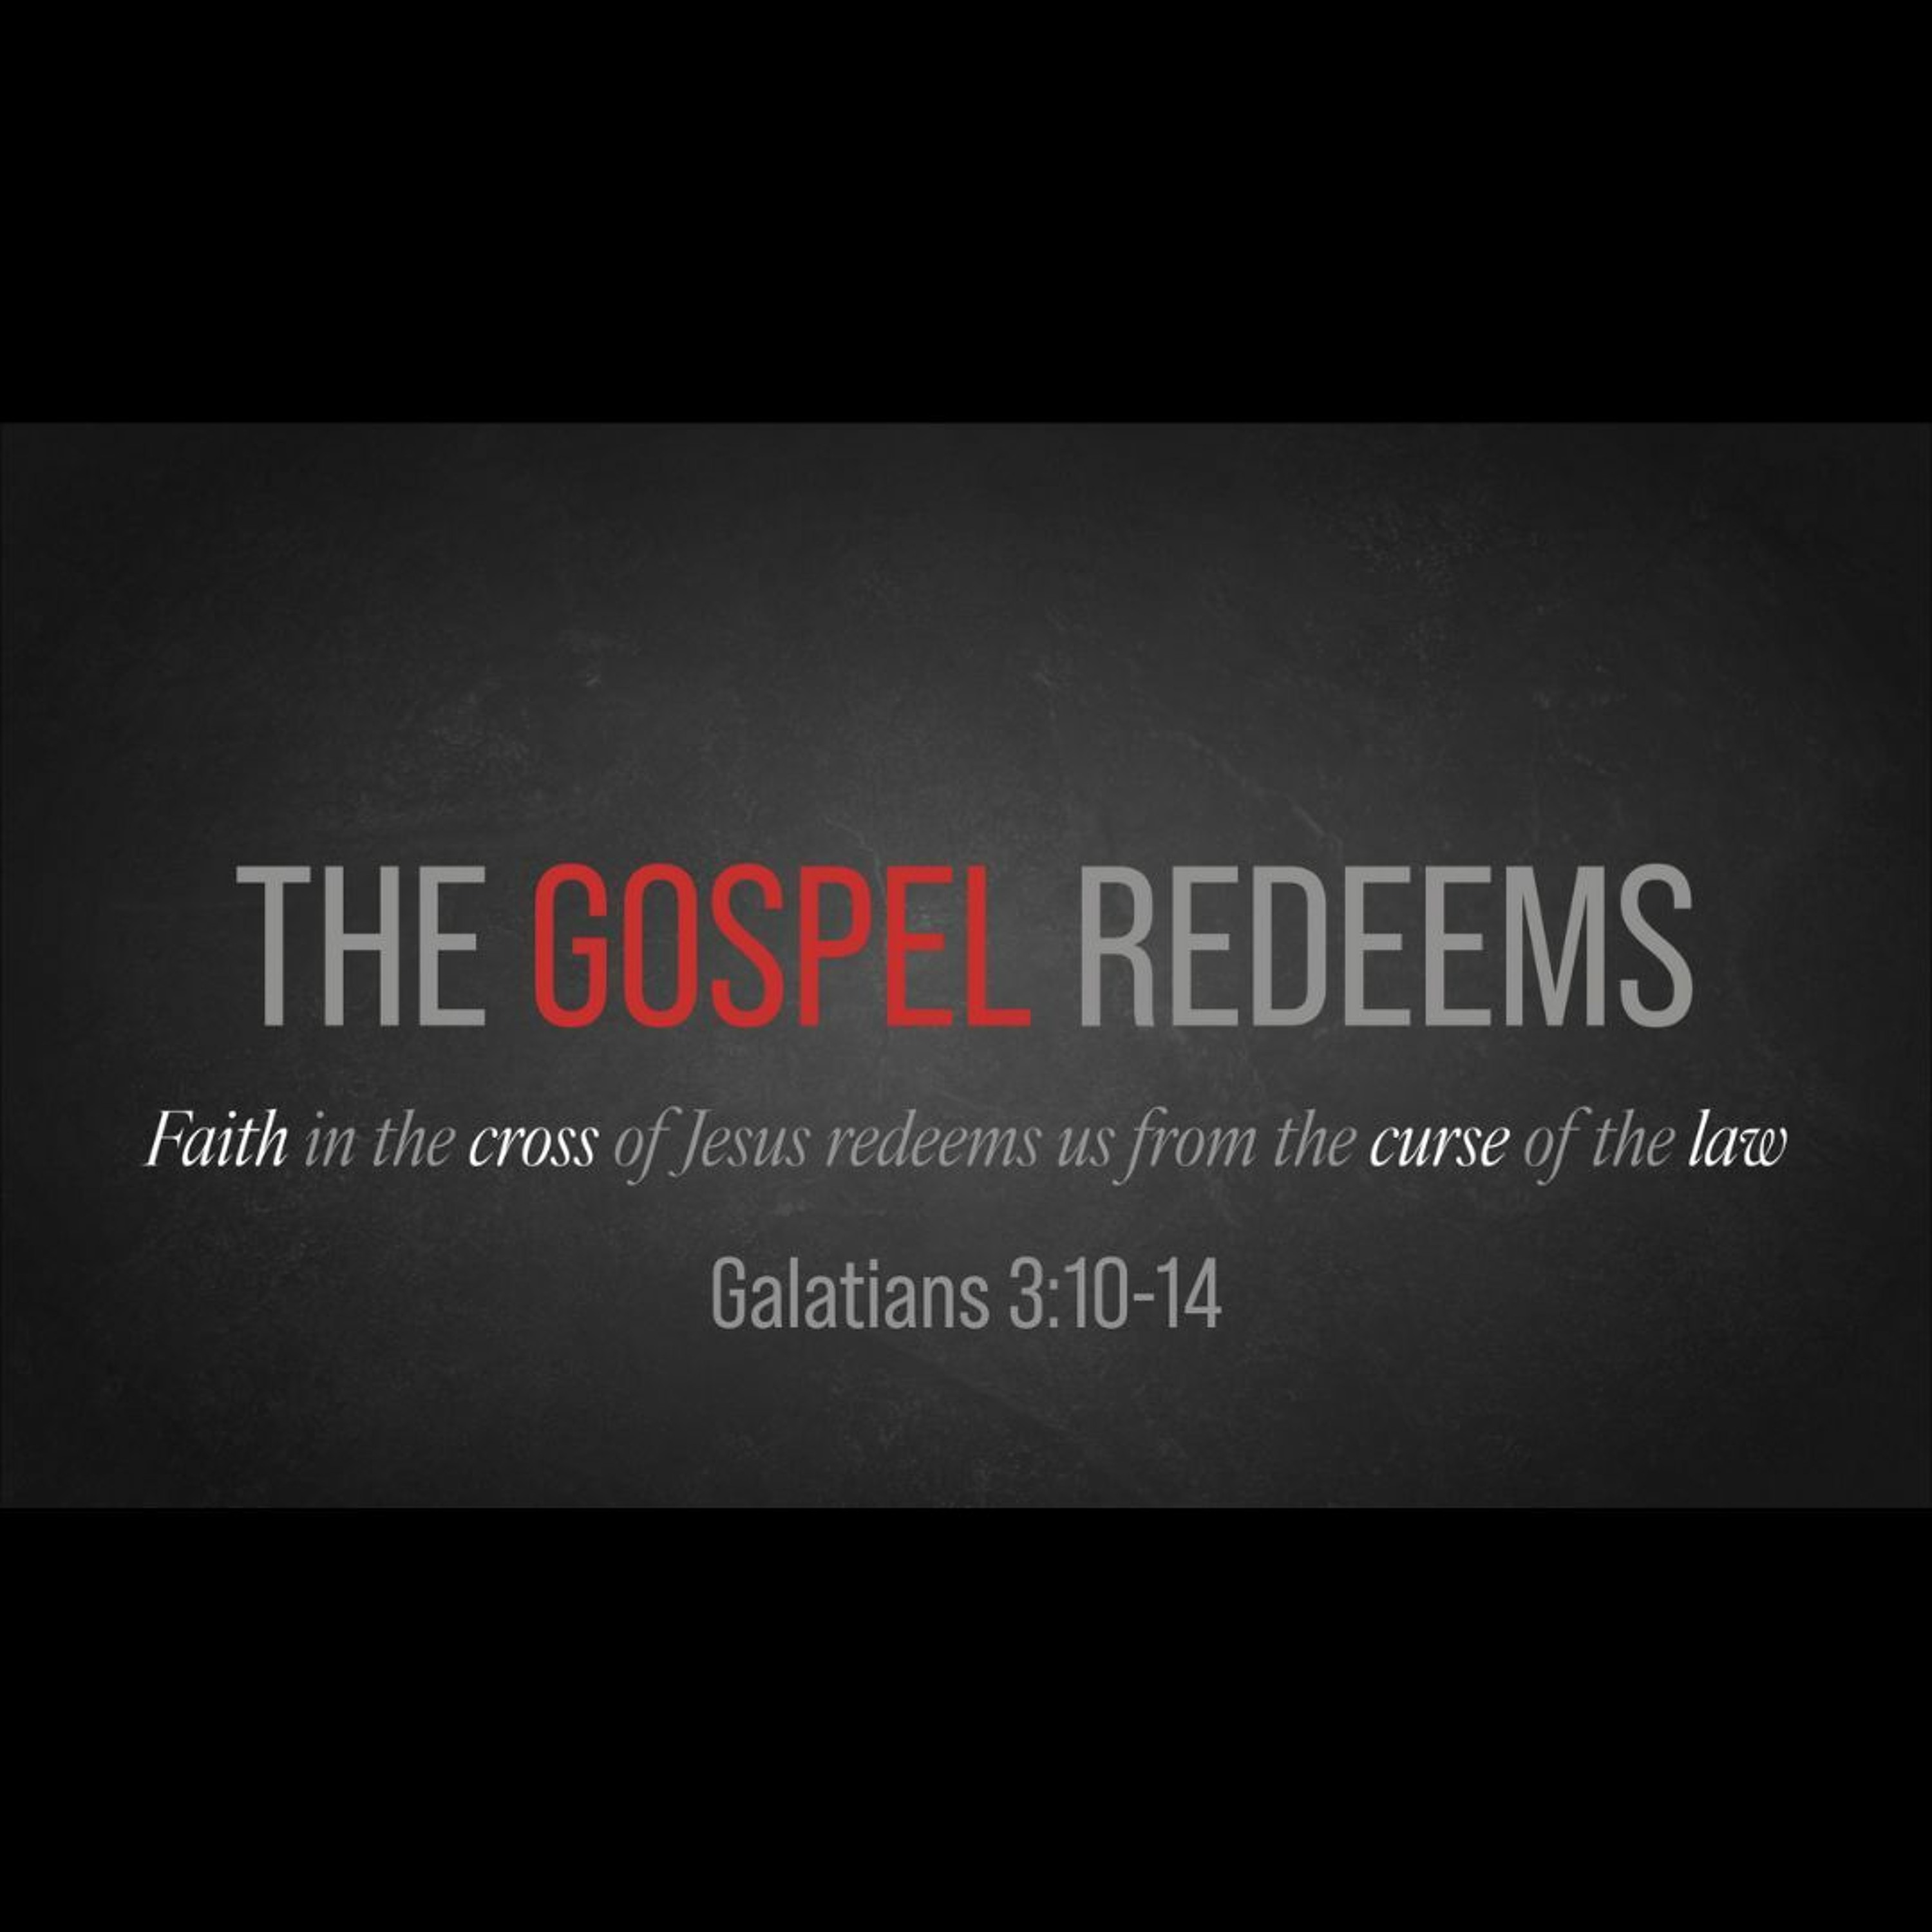 The Gospel Redeems (Galatians 3:1-14)